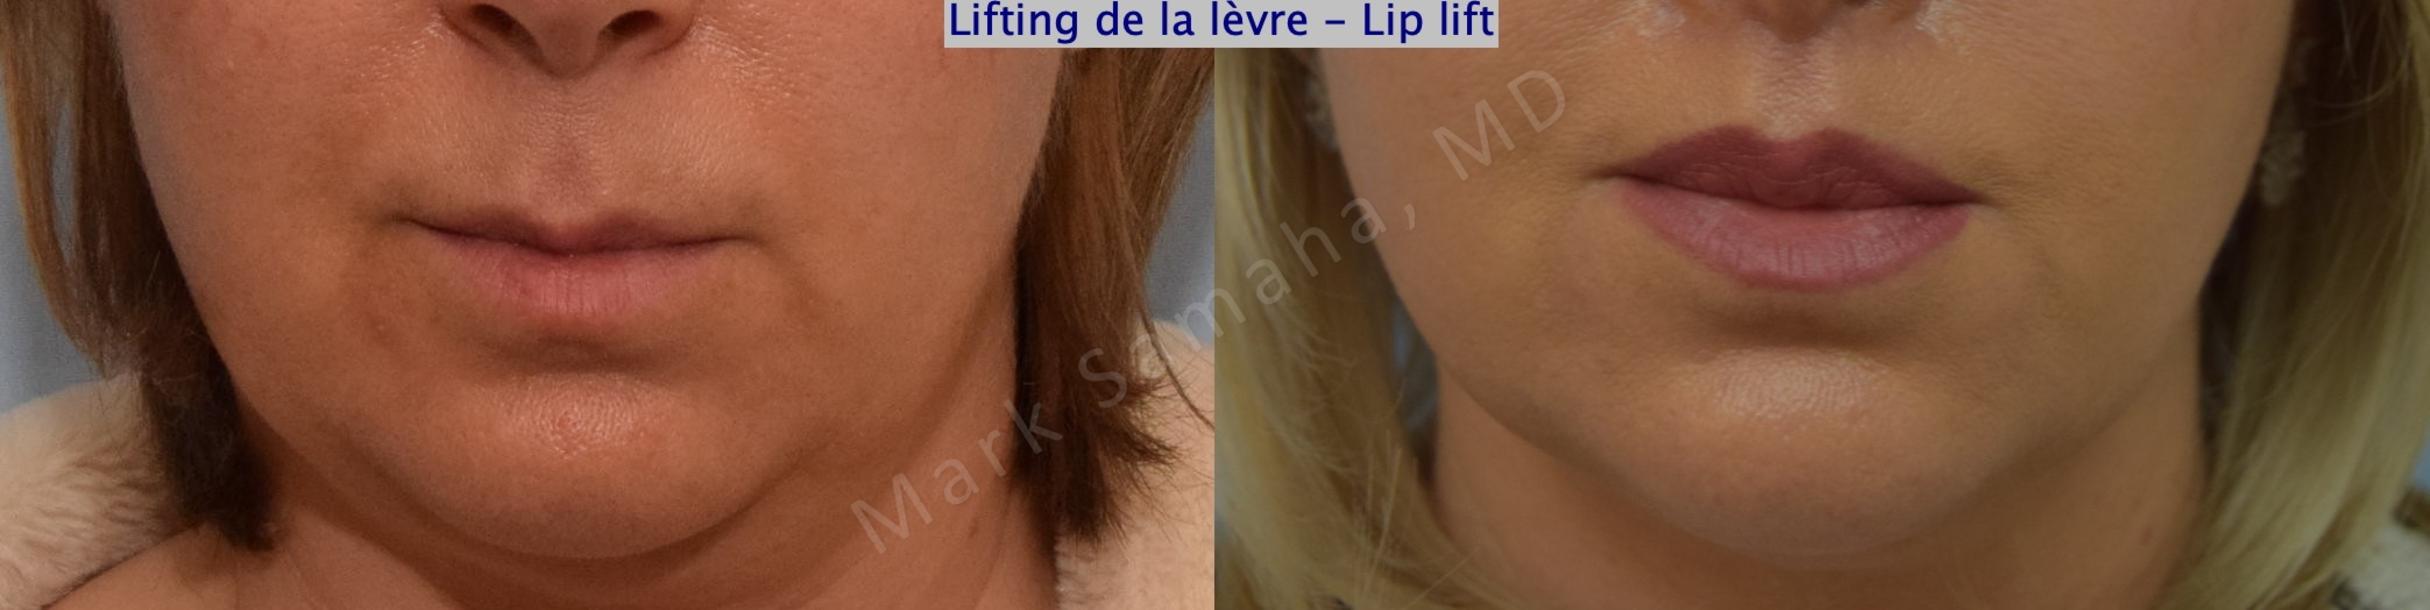 Before & After Lip Lift / Lifting de la lèvre supérieure Case 198 Front View in Mount Royal, QC